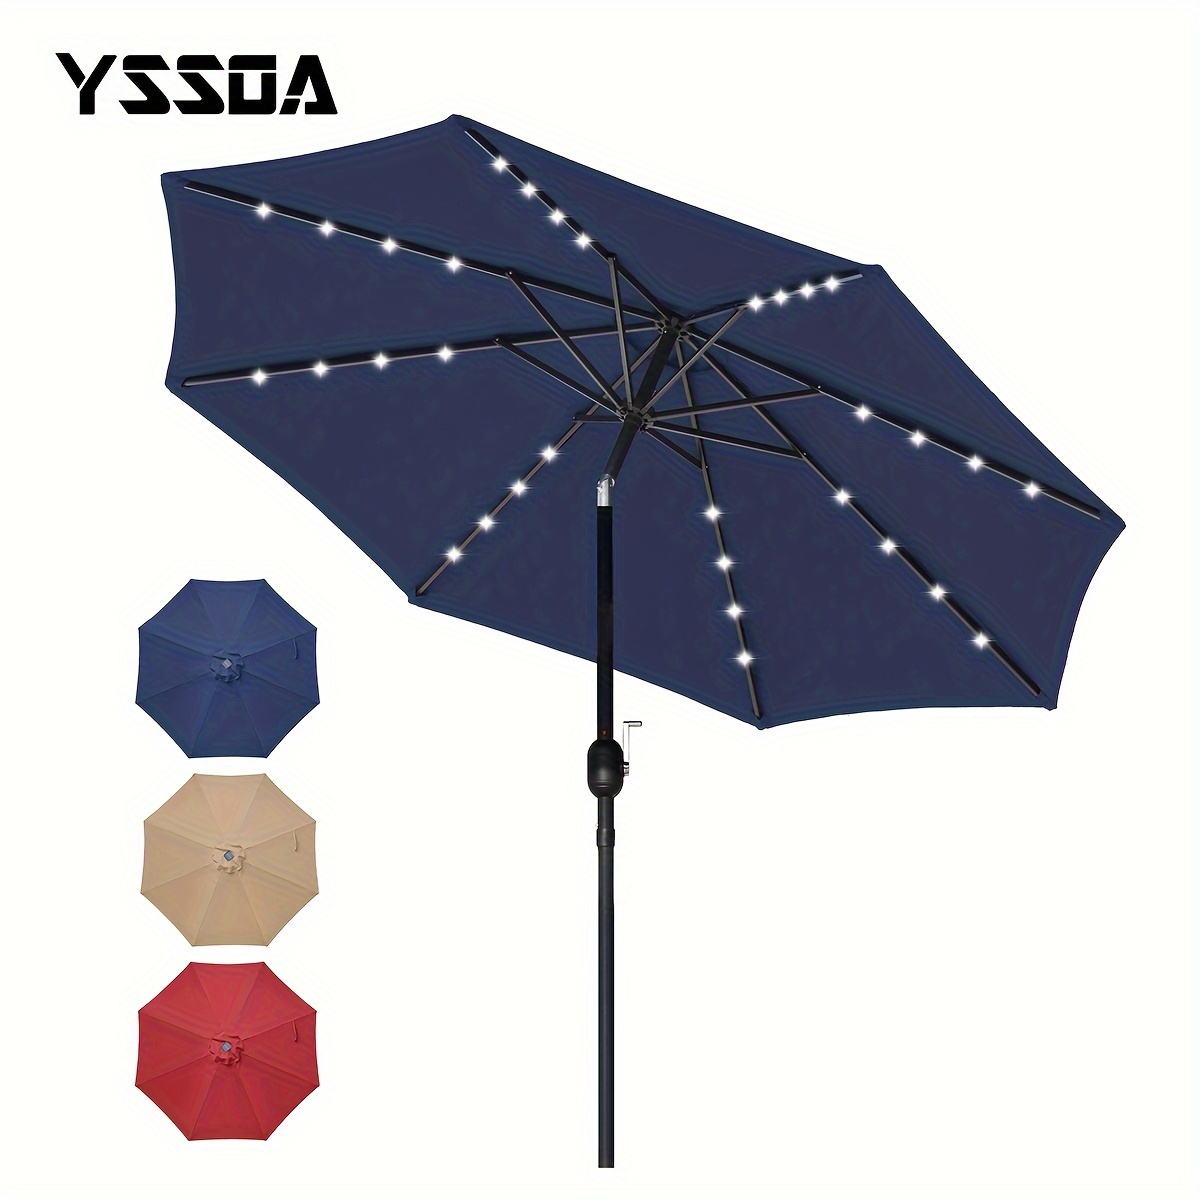 

Yssoa 9' Solar Umbrella 32 Led Lighted Patio Umbrella Table Market Umbrella With Push Button Tilt/crank Outdoor Umbrella For Garden, Deck, Backyard And Pool, Dark Blue/tan/red